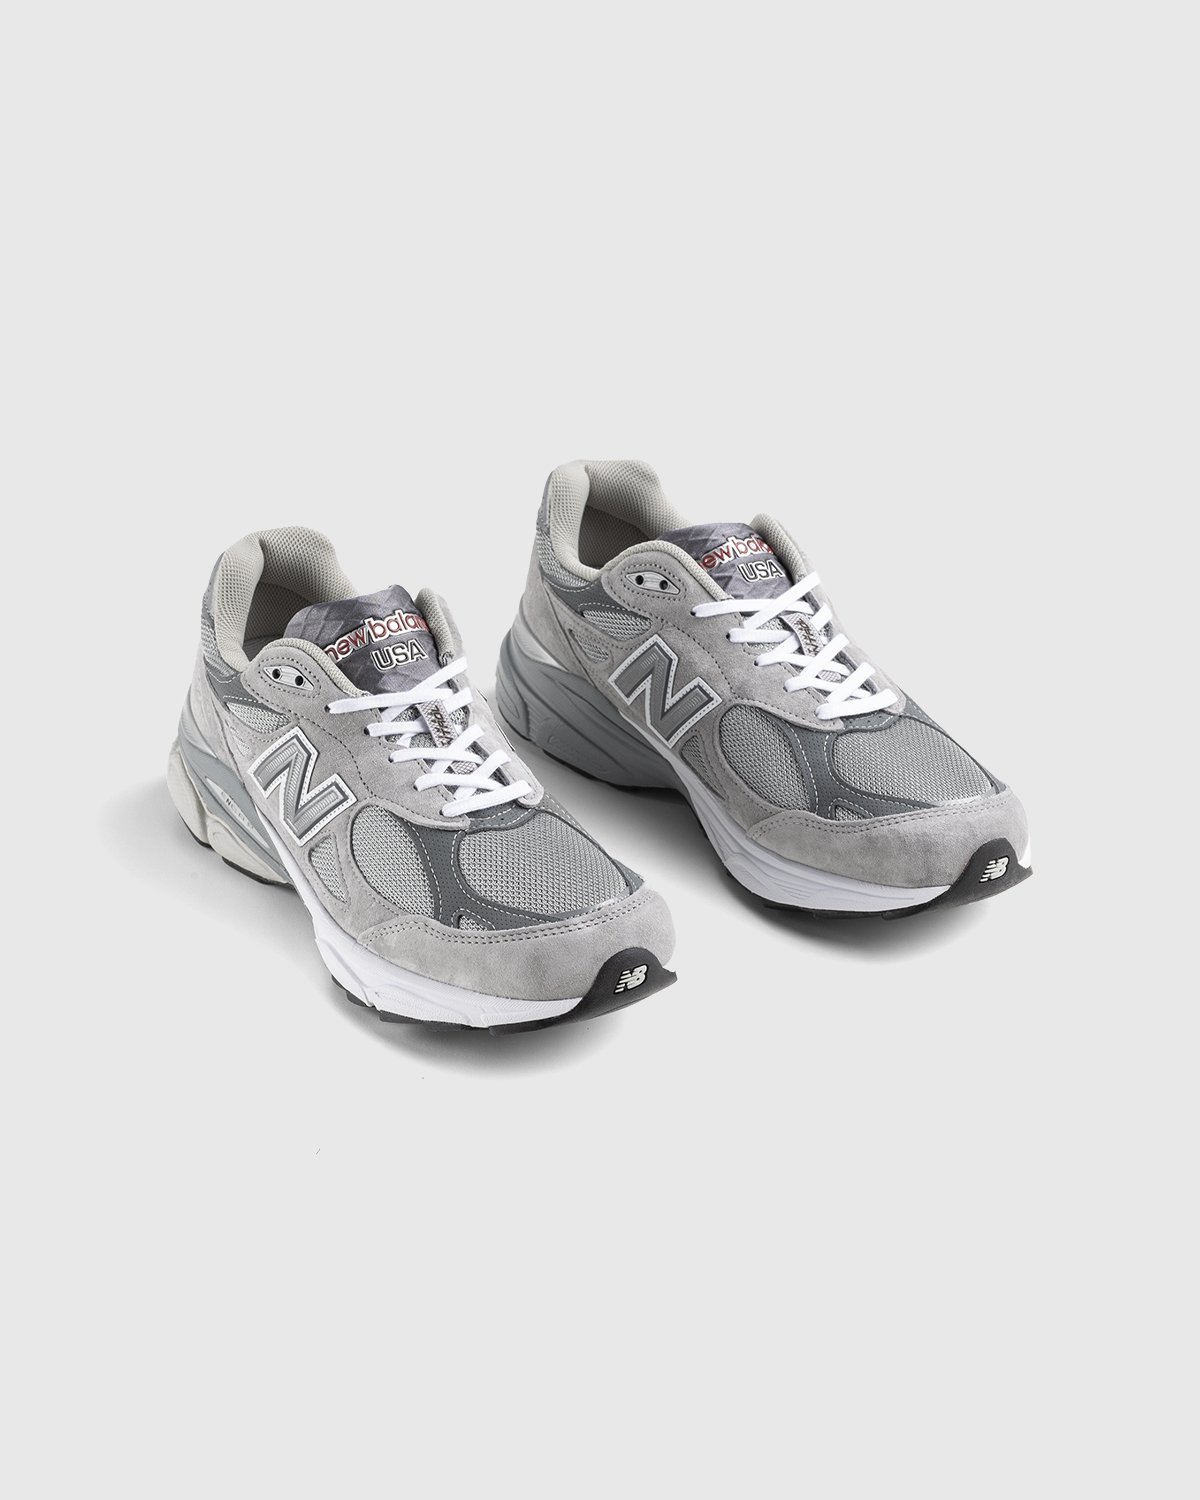 New Balance - M990GY3 Grey - Footwear - Grey - Image 3